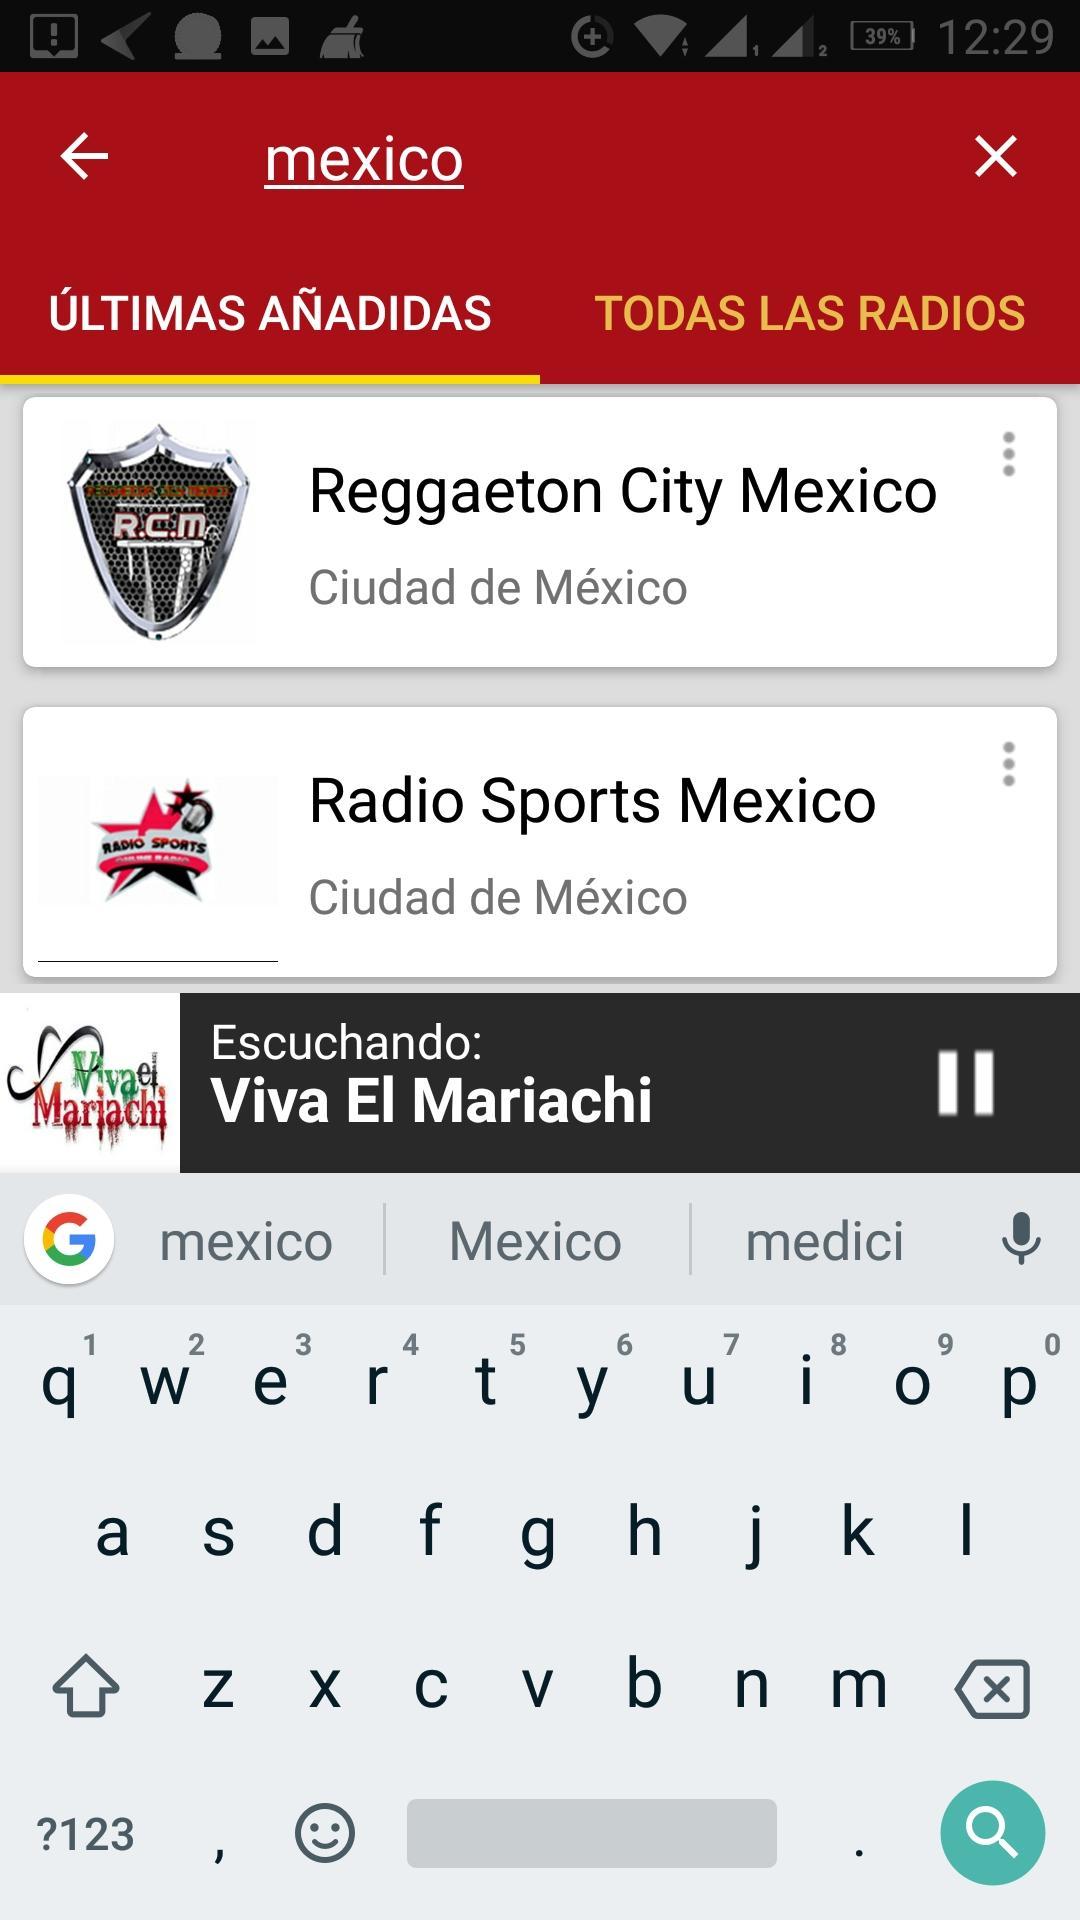 Emisoras de Radio de la Ciudad de México for Android - APK Download